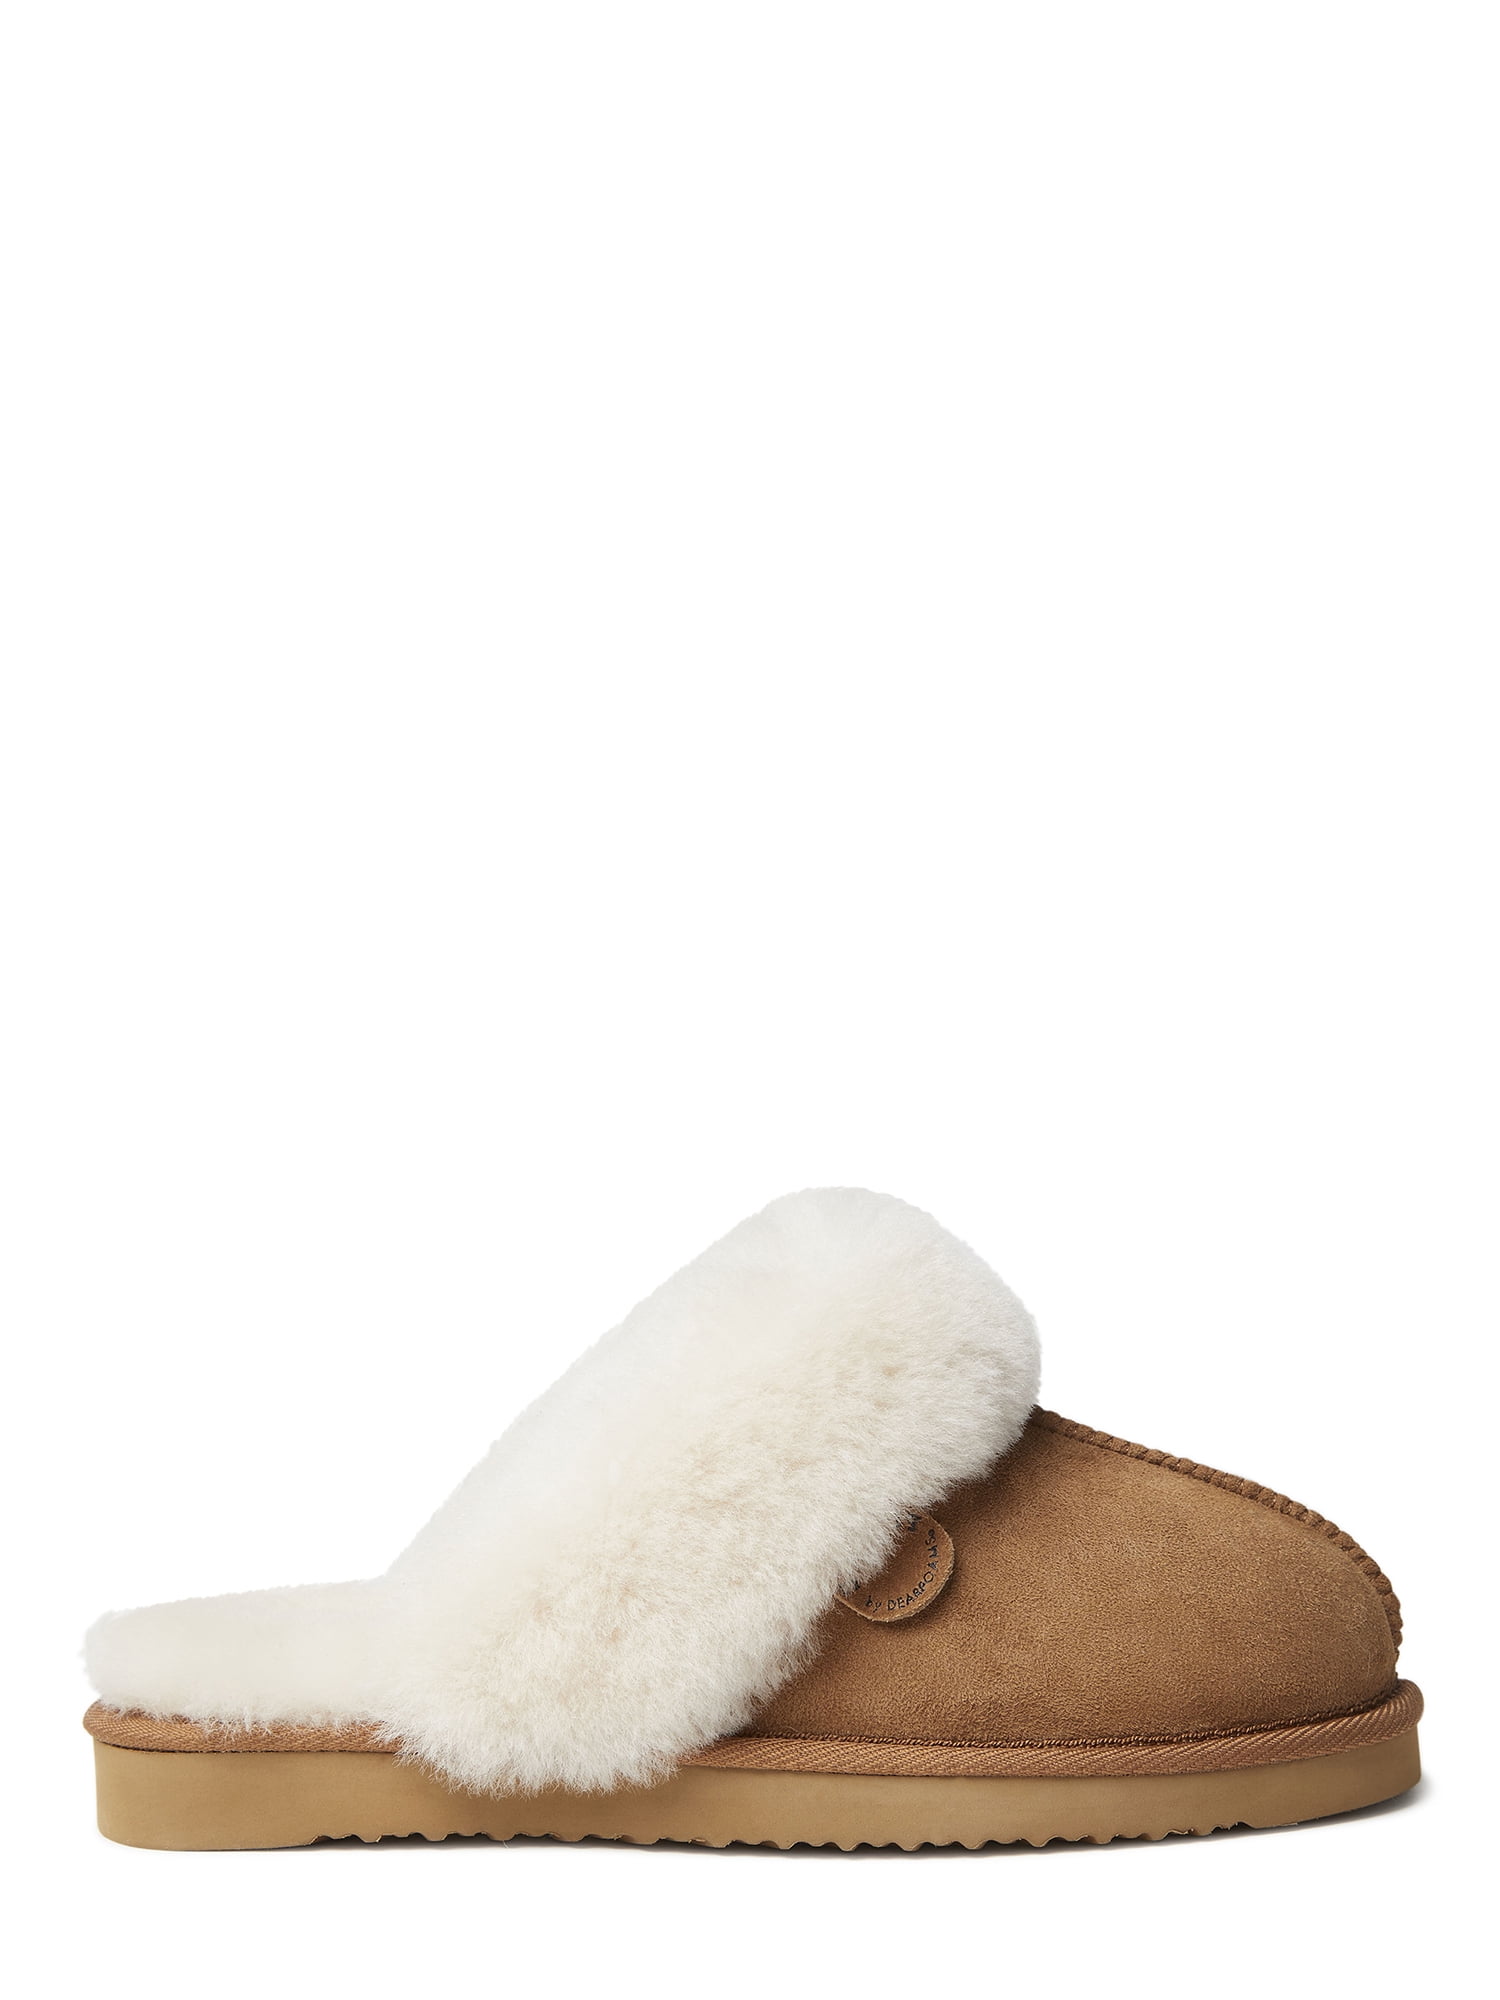 fireside slippers